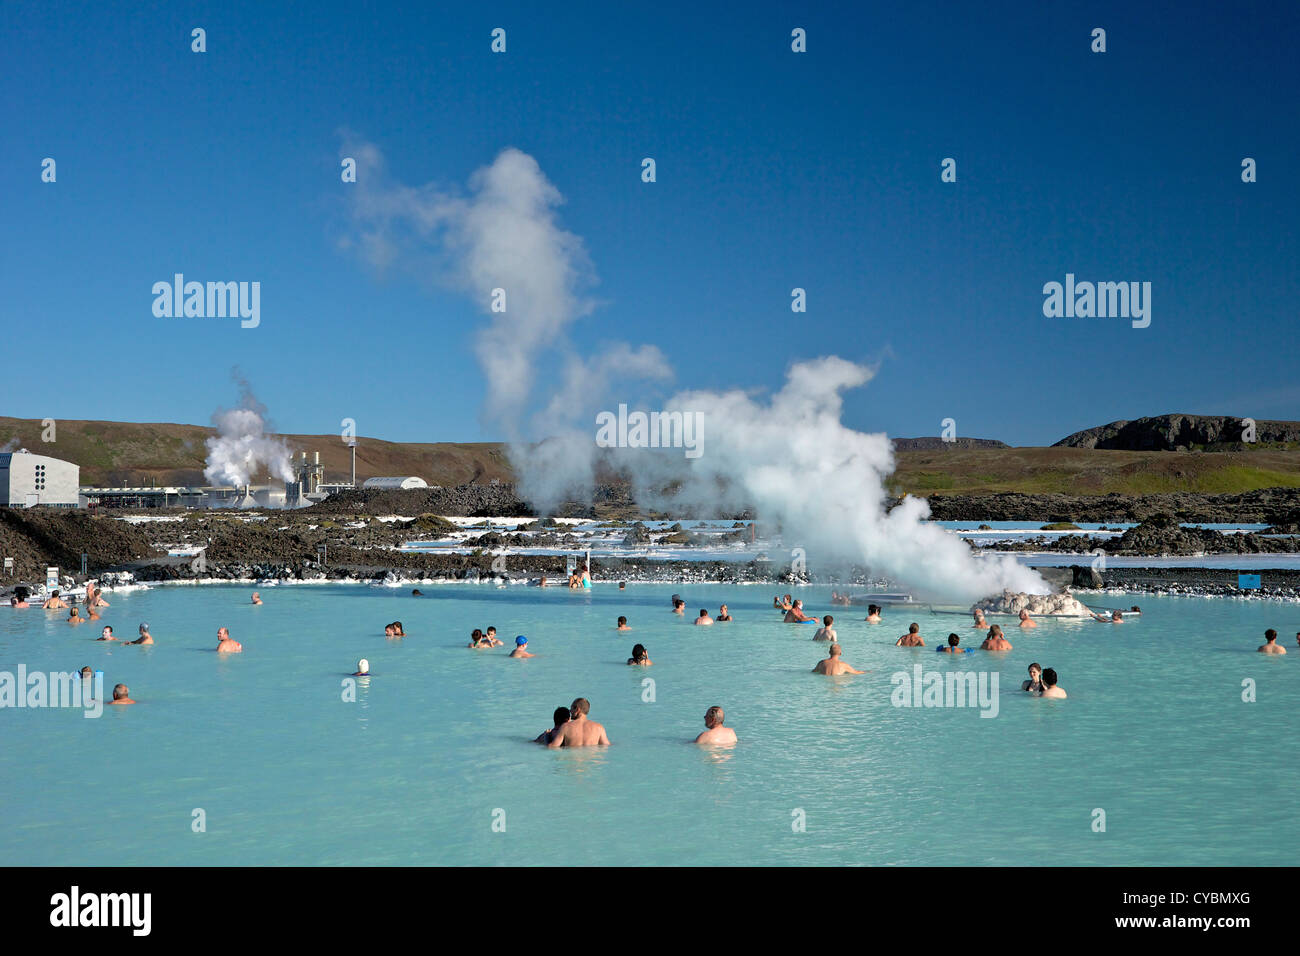 Turistas y visitantes disfrutar del aire libre en la piscina geotérmica Blue Lagoon, Islandia Foto de stock